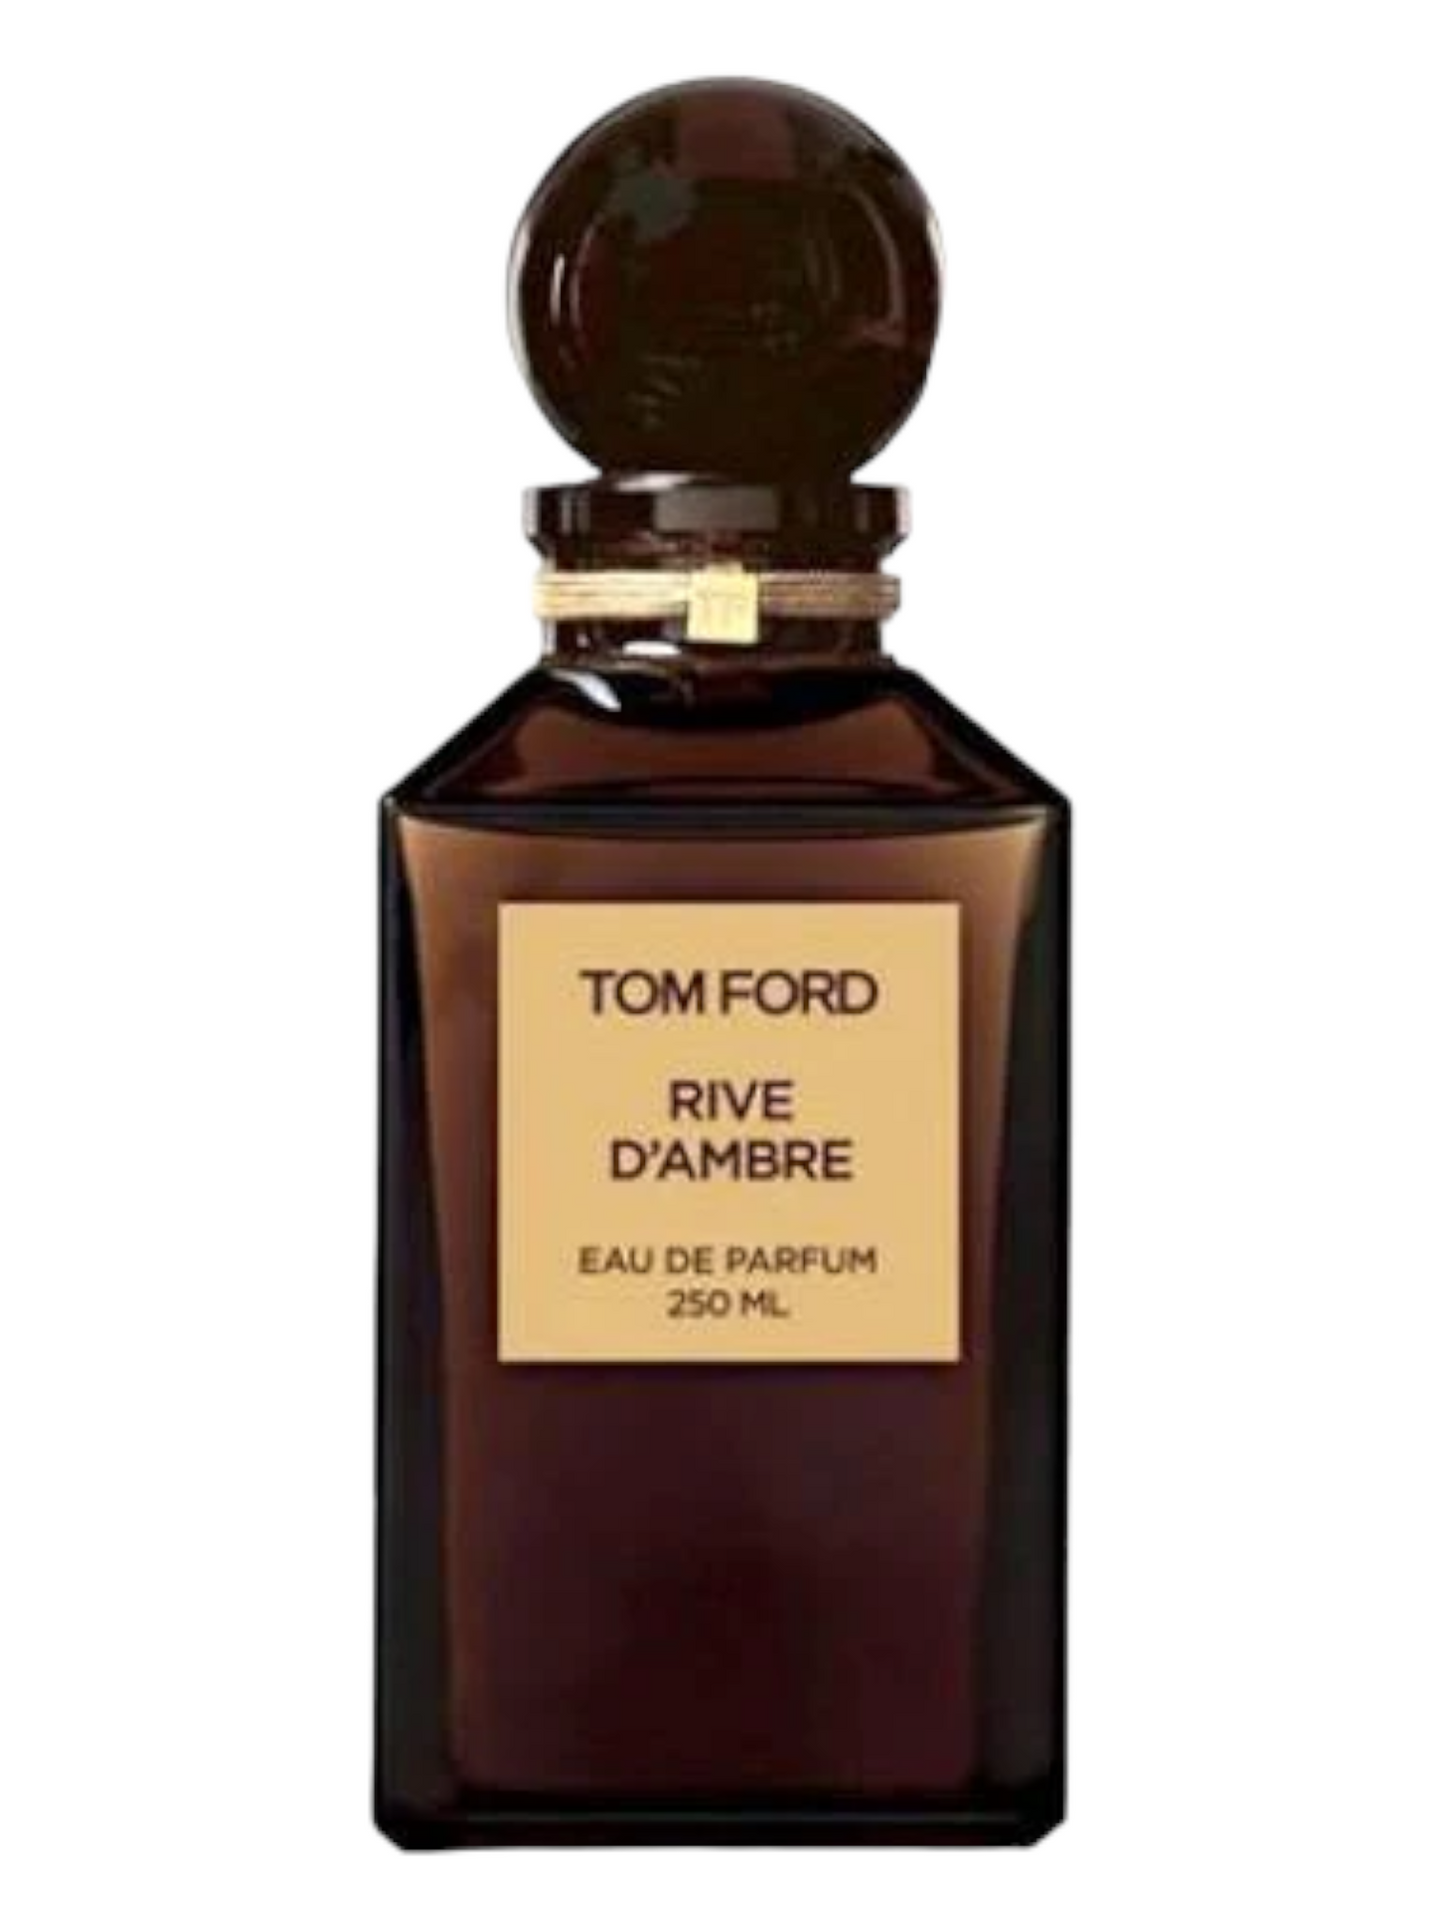 TOM FORD Rive D'Ambre Private Blend Eau De Parfum Decant Select Size